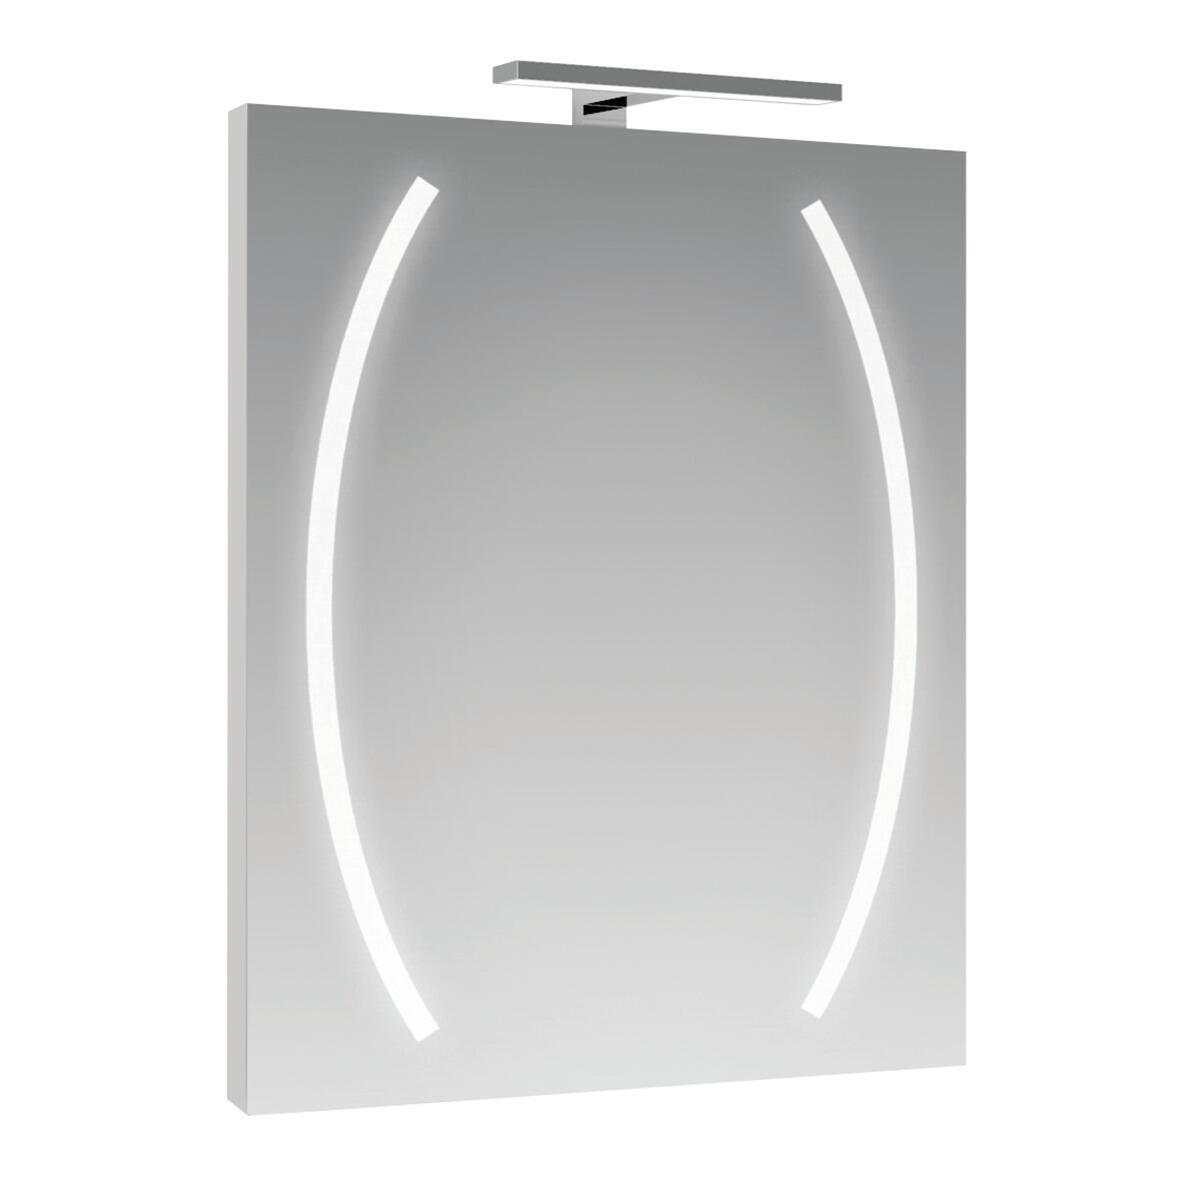 Specchio con illuminazione integrata completo di faretto bagno rettangolare Boomerang L 60 x H 80 cm - 3